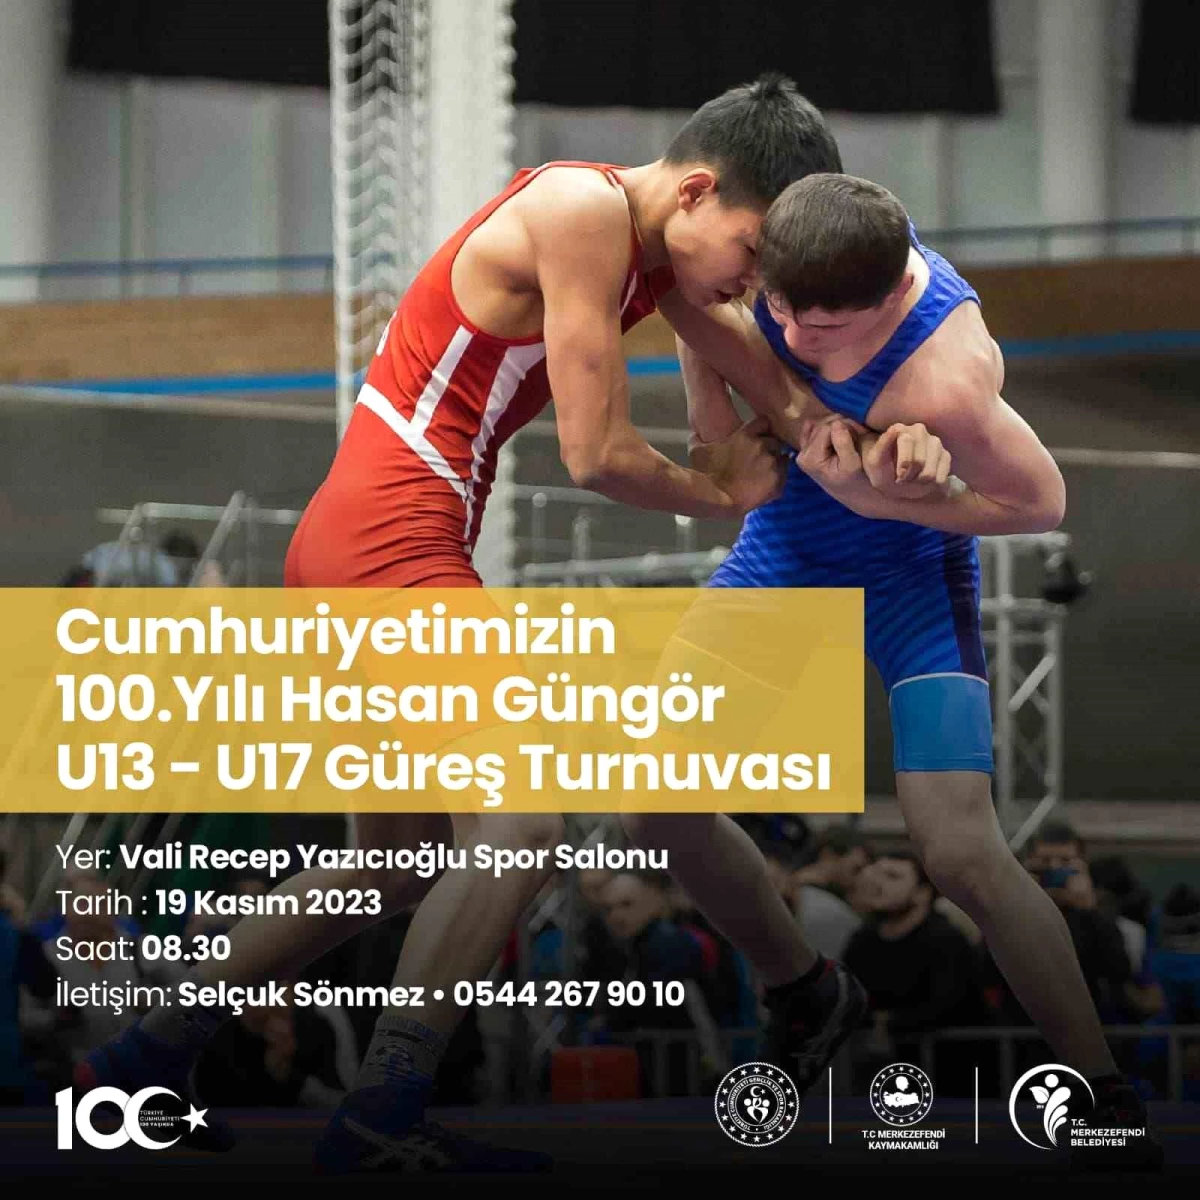 Cumhuriyetin 100. Yılı ve Hasan Güngör U13-U17 Güreş Turnuvası Kayıtları Başladı